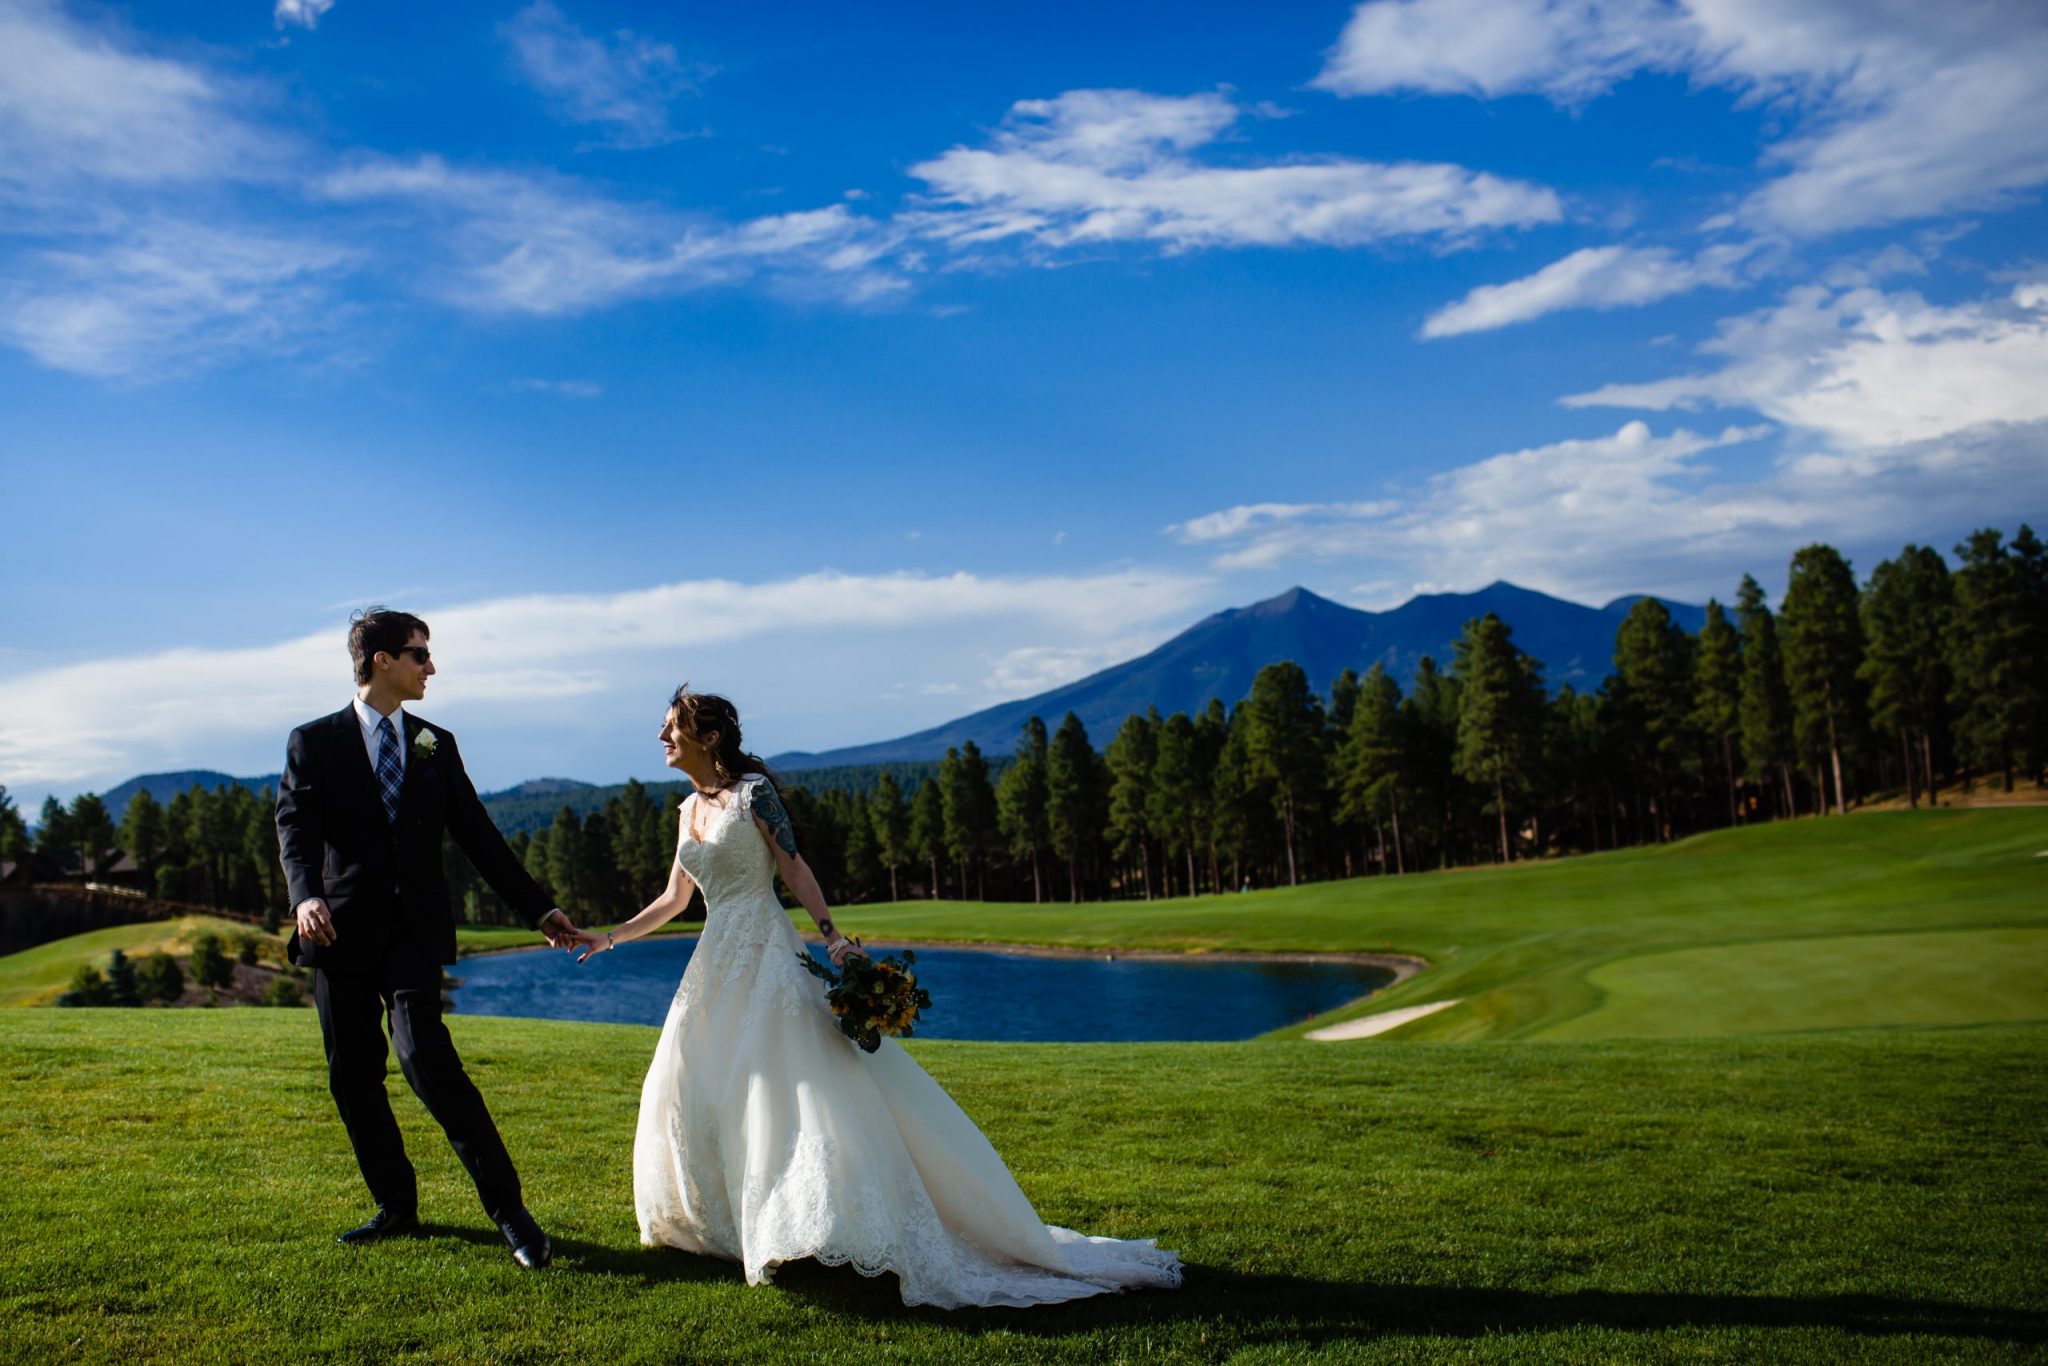 Flagstaff Ranch Wedding, Arizona wedding photographer, northern arizona wedding photographer, documentary wedding photographer